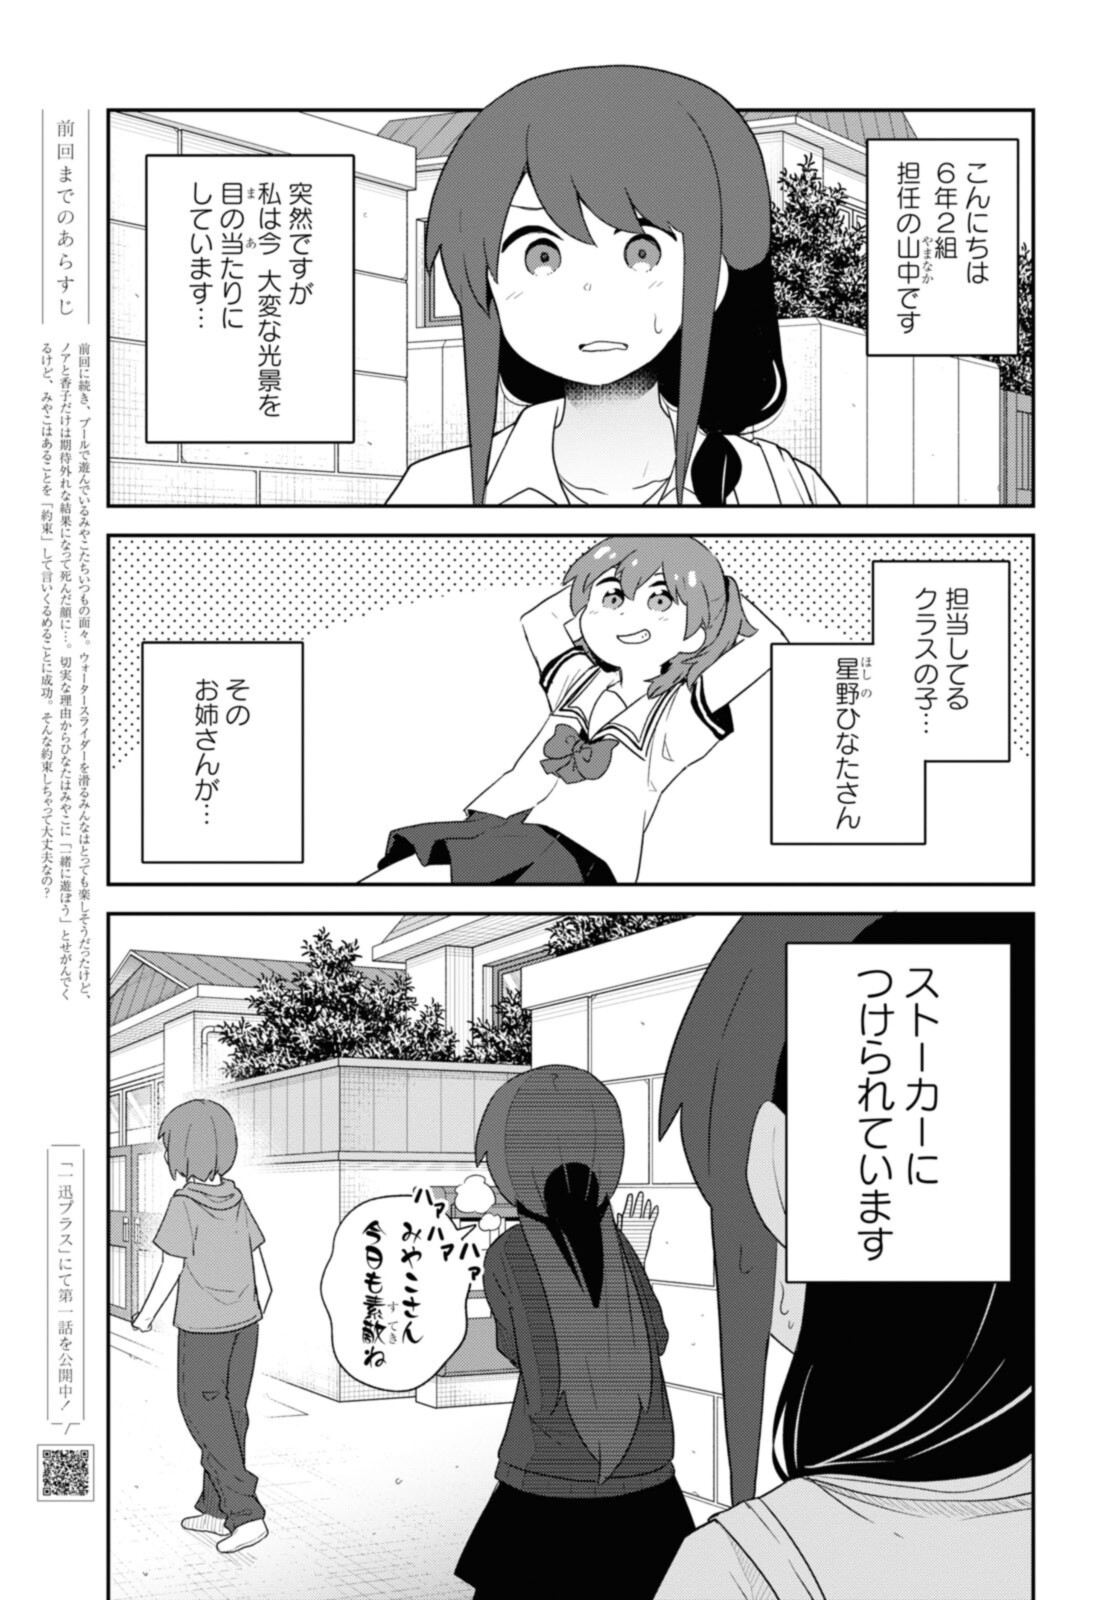 Watashi ni Tenshi ga Maiorita! - Chapter 96 - Page 1